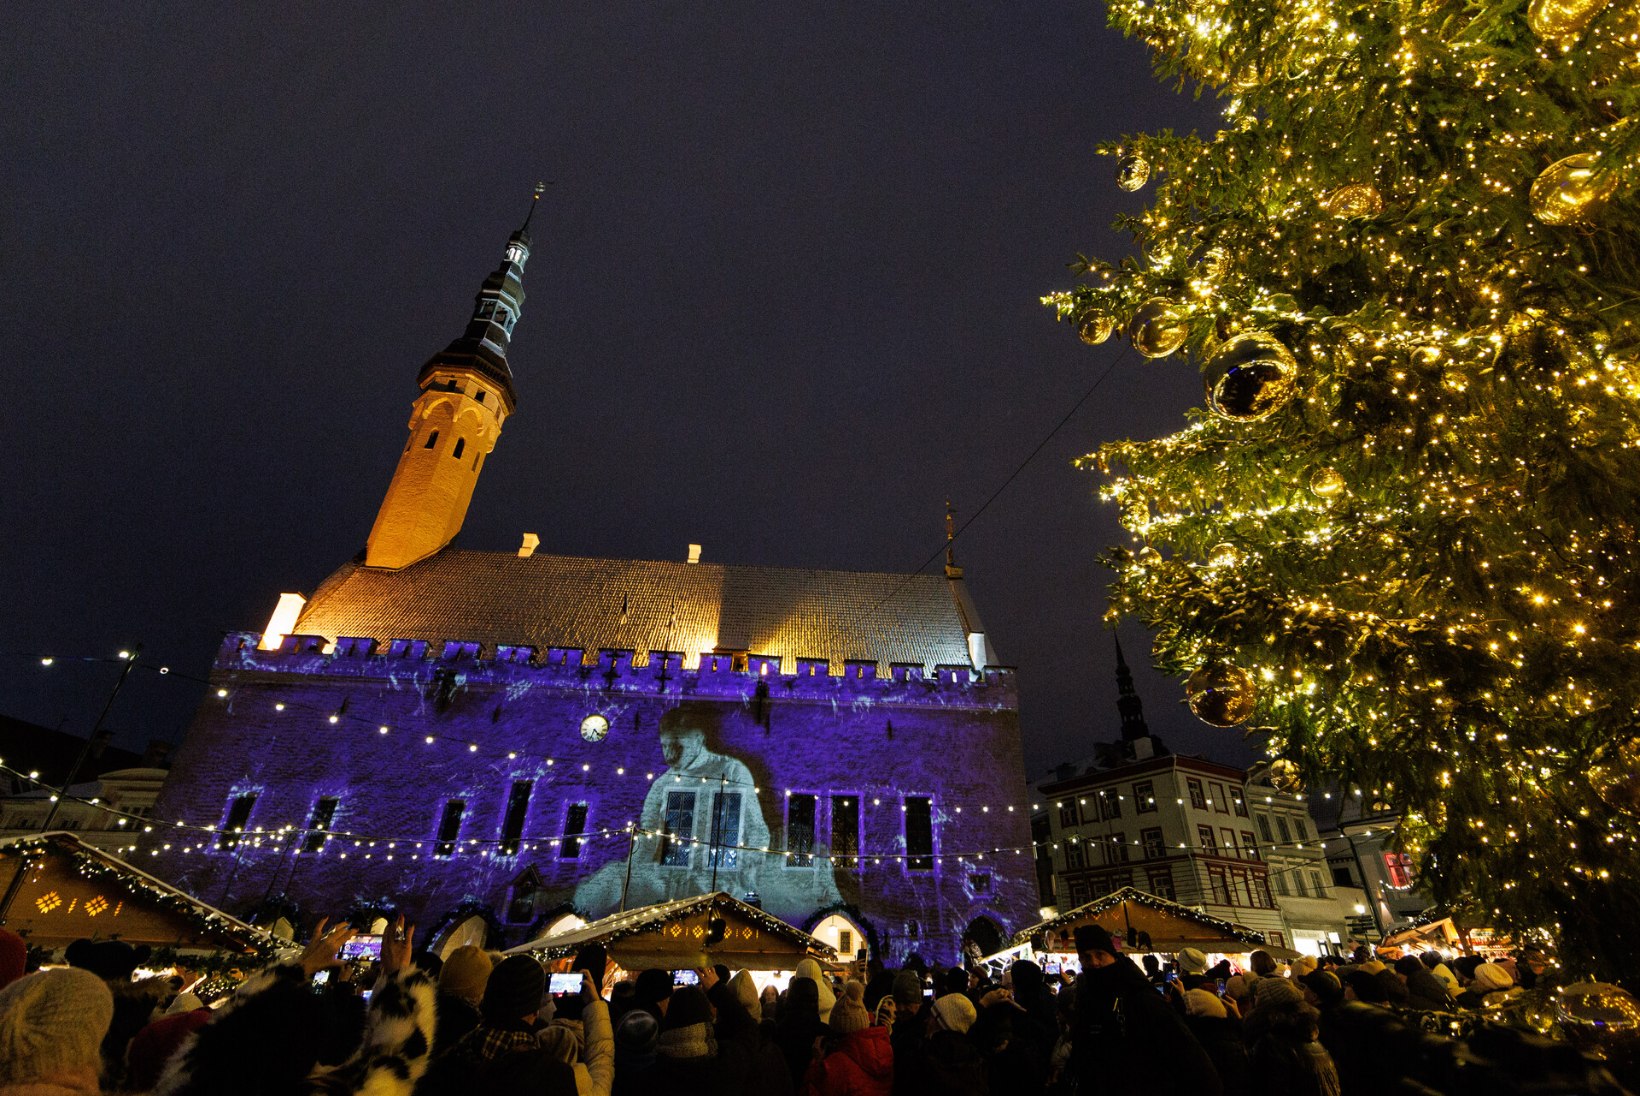 ARMASTATUD PAIGAKE: Tallinna vanalinna jõuluturg jõuab televaatajateni üle maailma